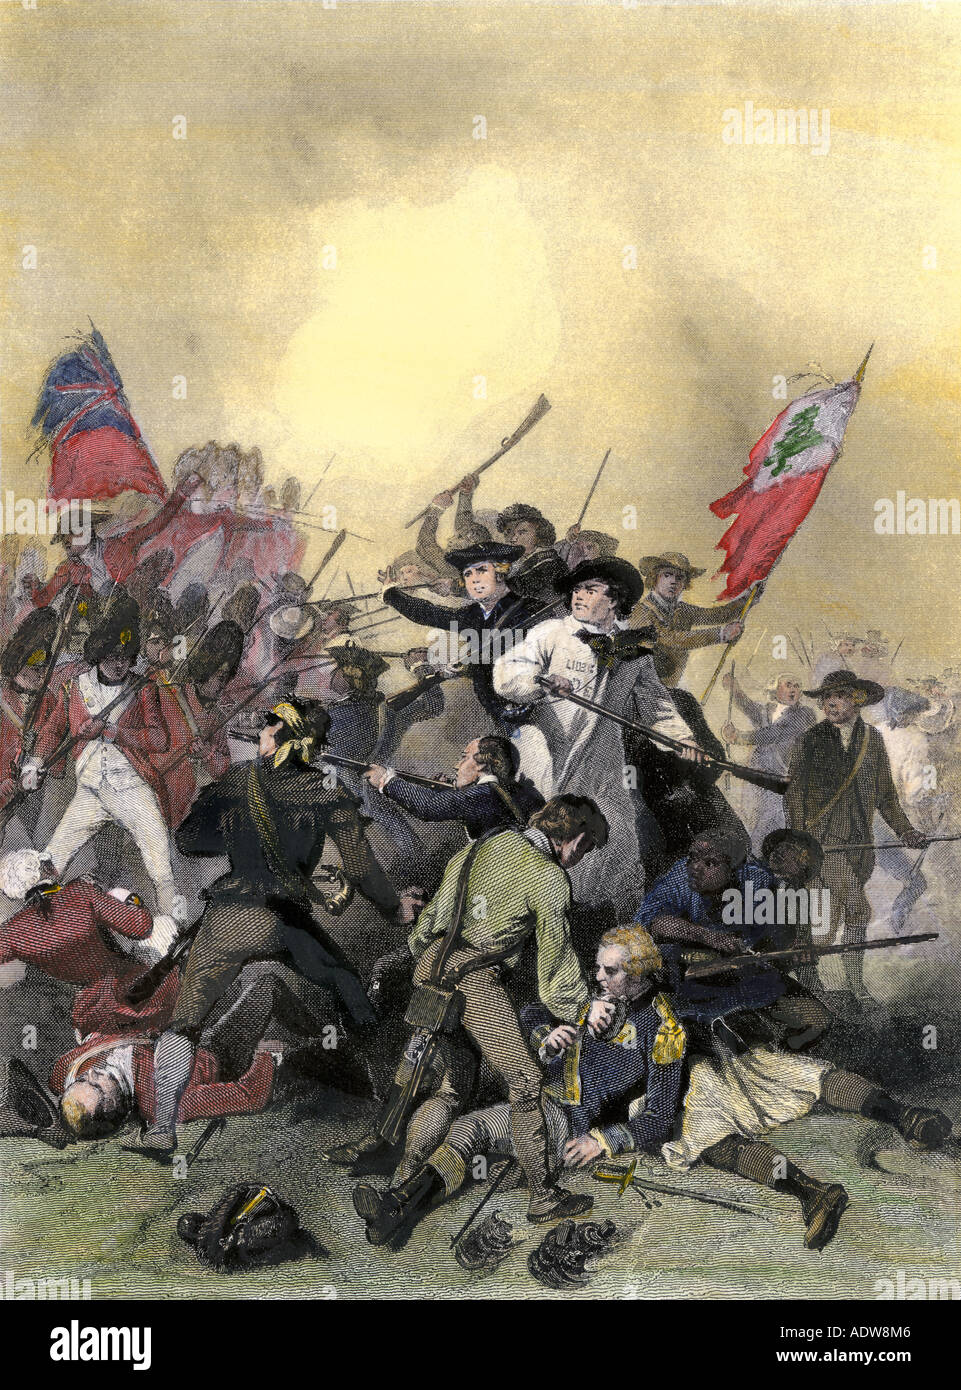 Minutemen lors de la Bataille de Bunker Hill au déclenchement de la Révolution américaine en 1775. À la main, gravure sur acier Banque D'Images